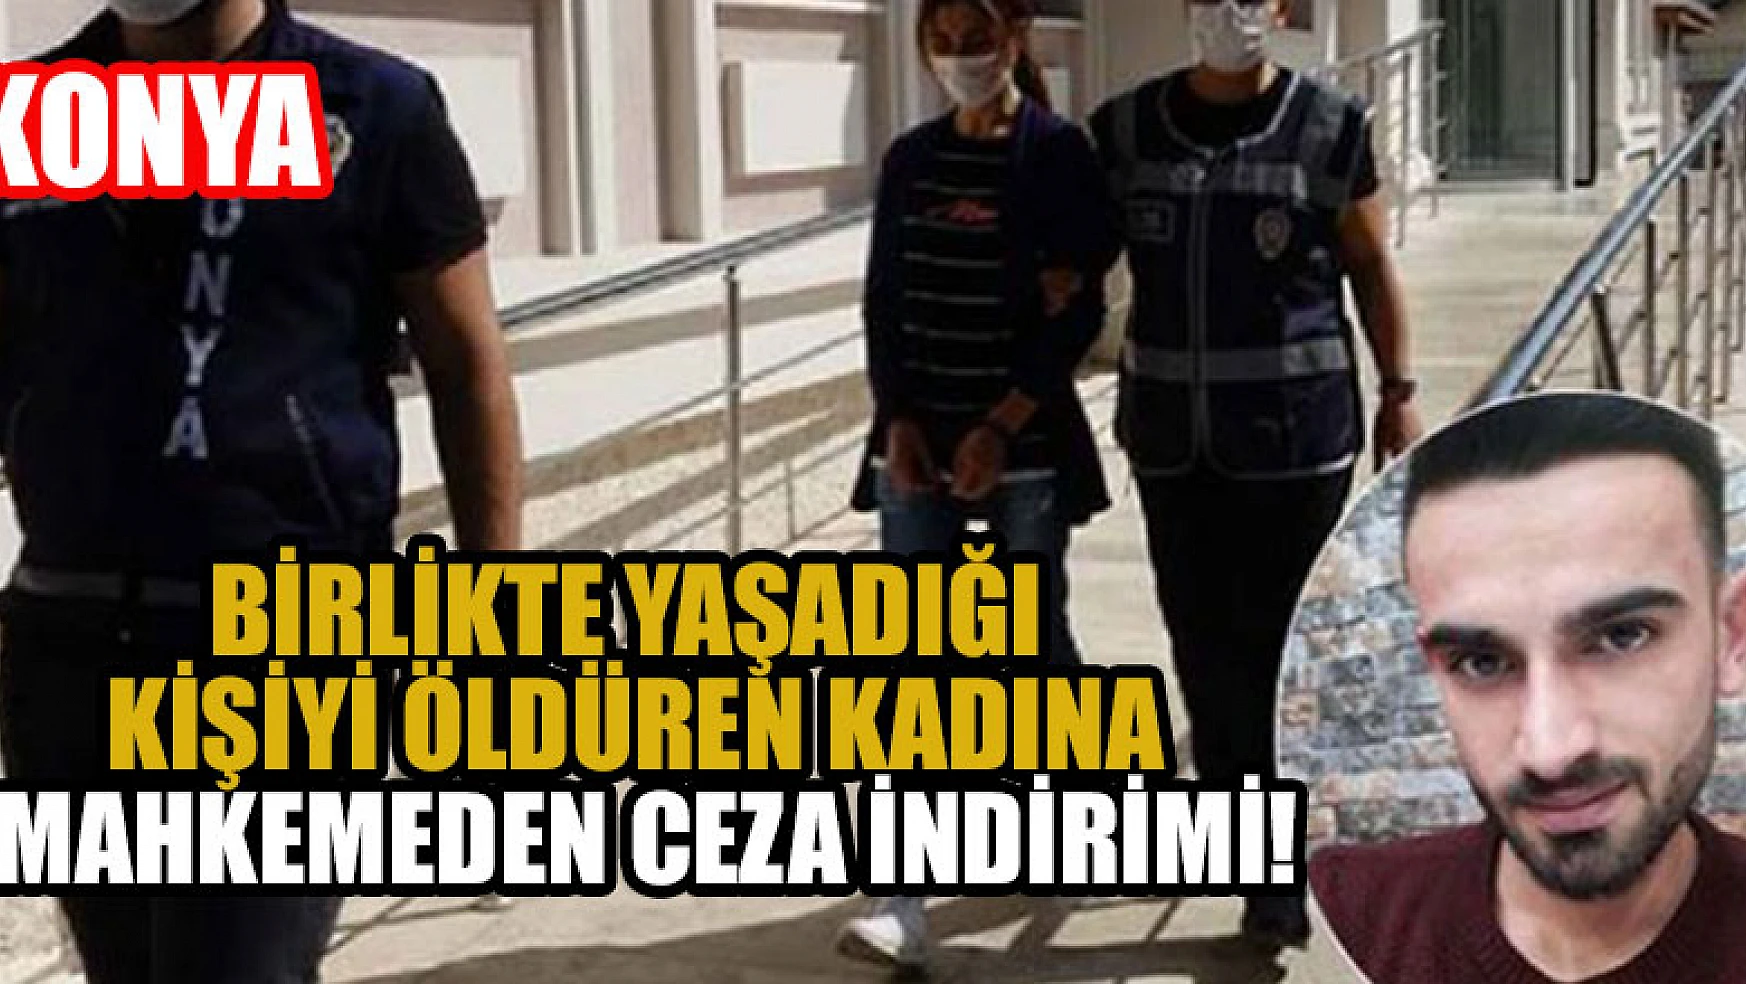 Konya'da birlikte yaşadığı kişiyi öldüren kadına mahkeme ceza indirimiyaptı